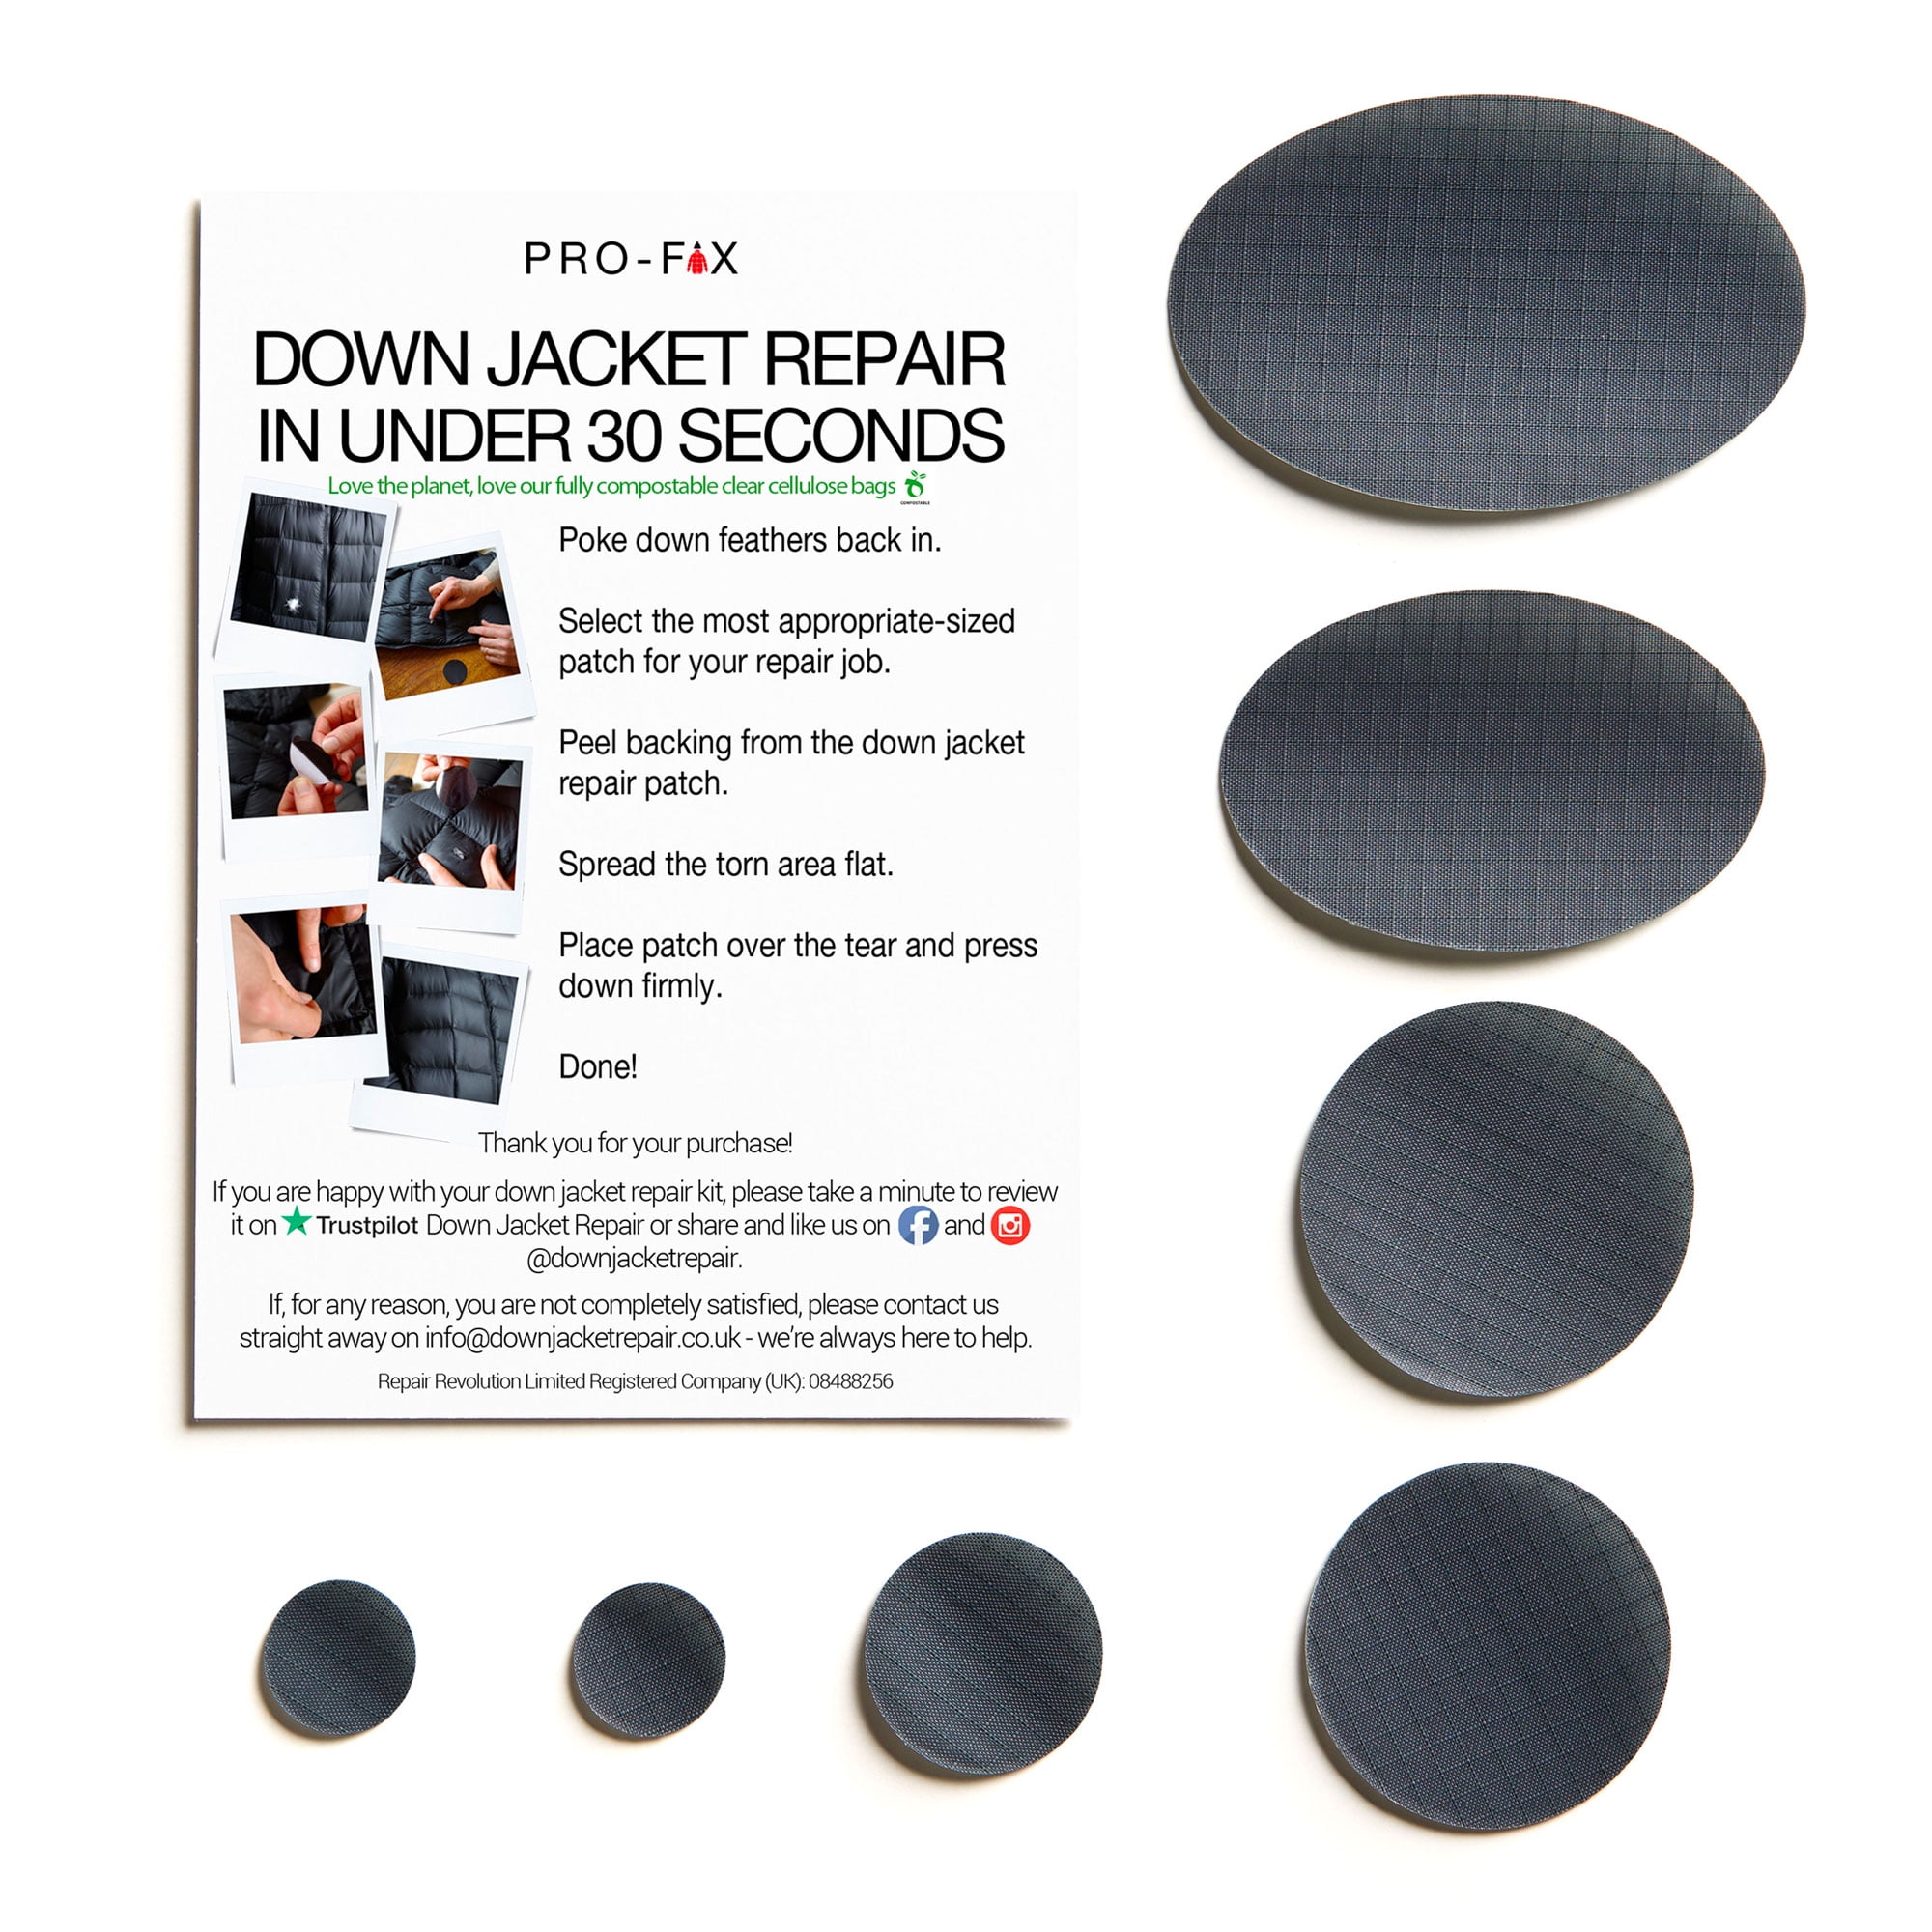  Down Jacket Repair: Self-Adhesive Repair Patches for